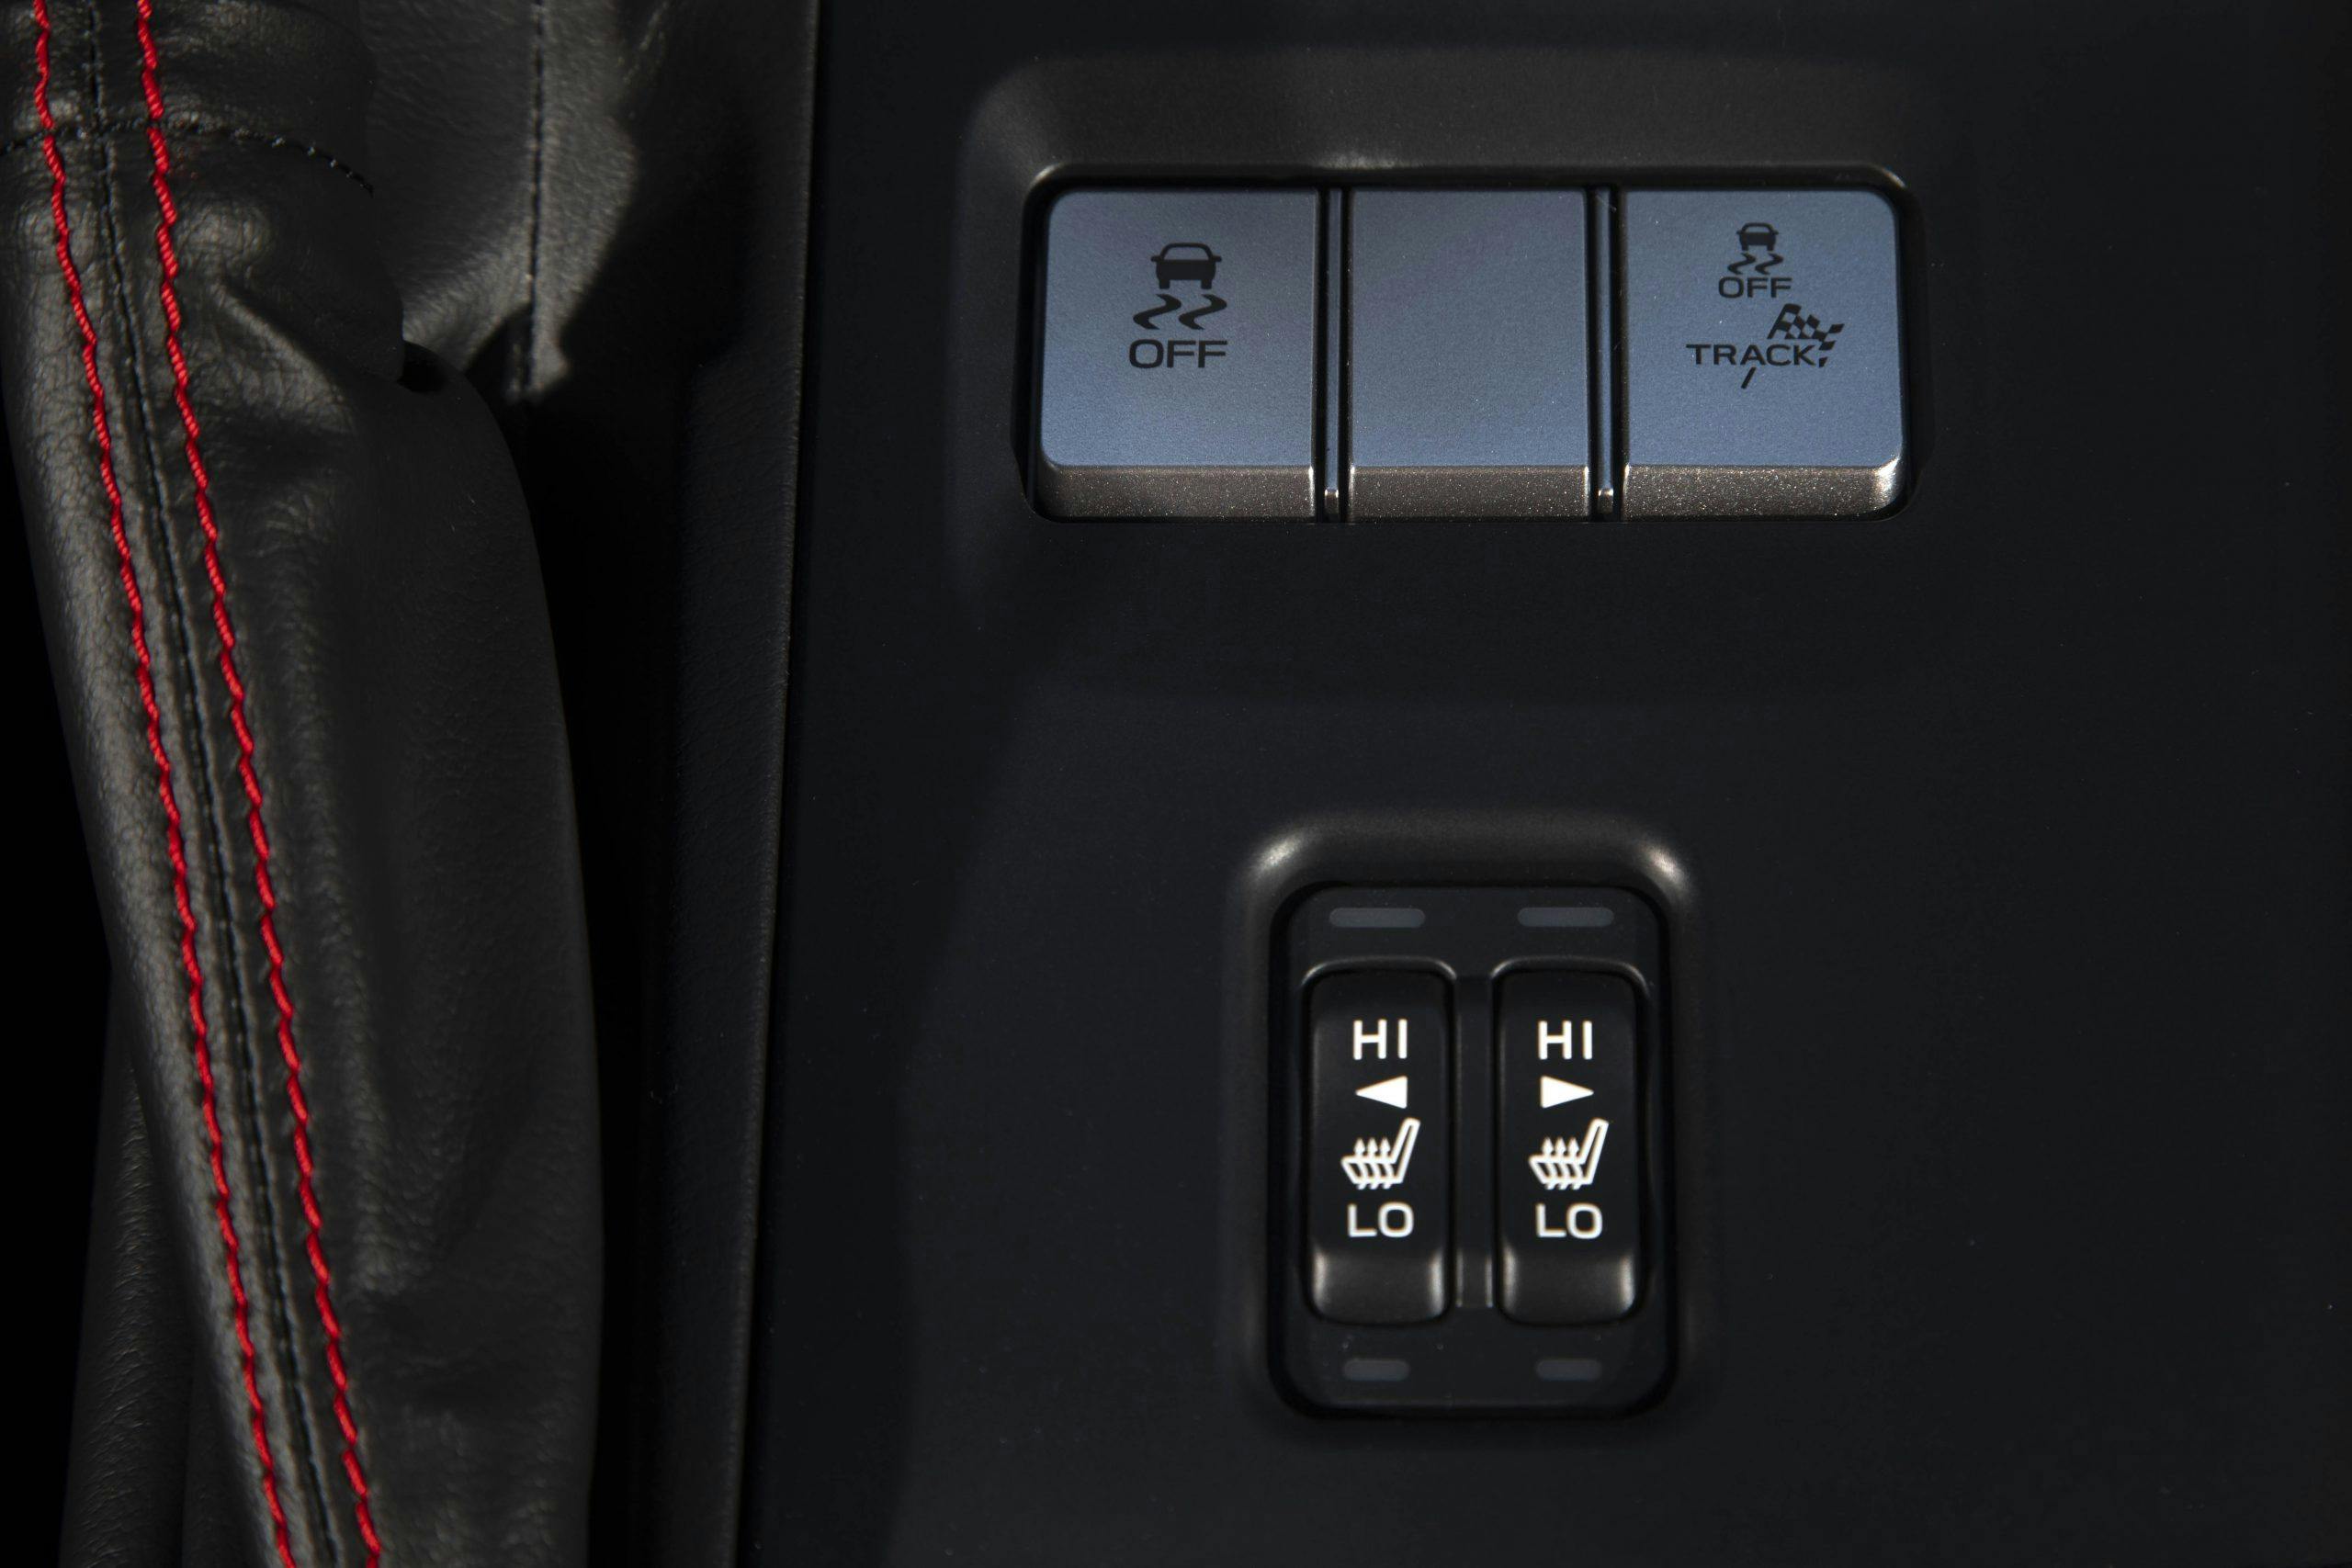 New 2022 Subaru BRZ interior drive modes button